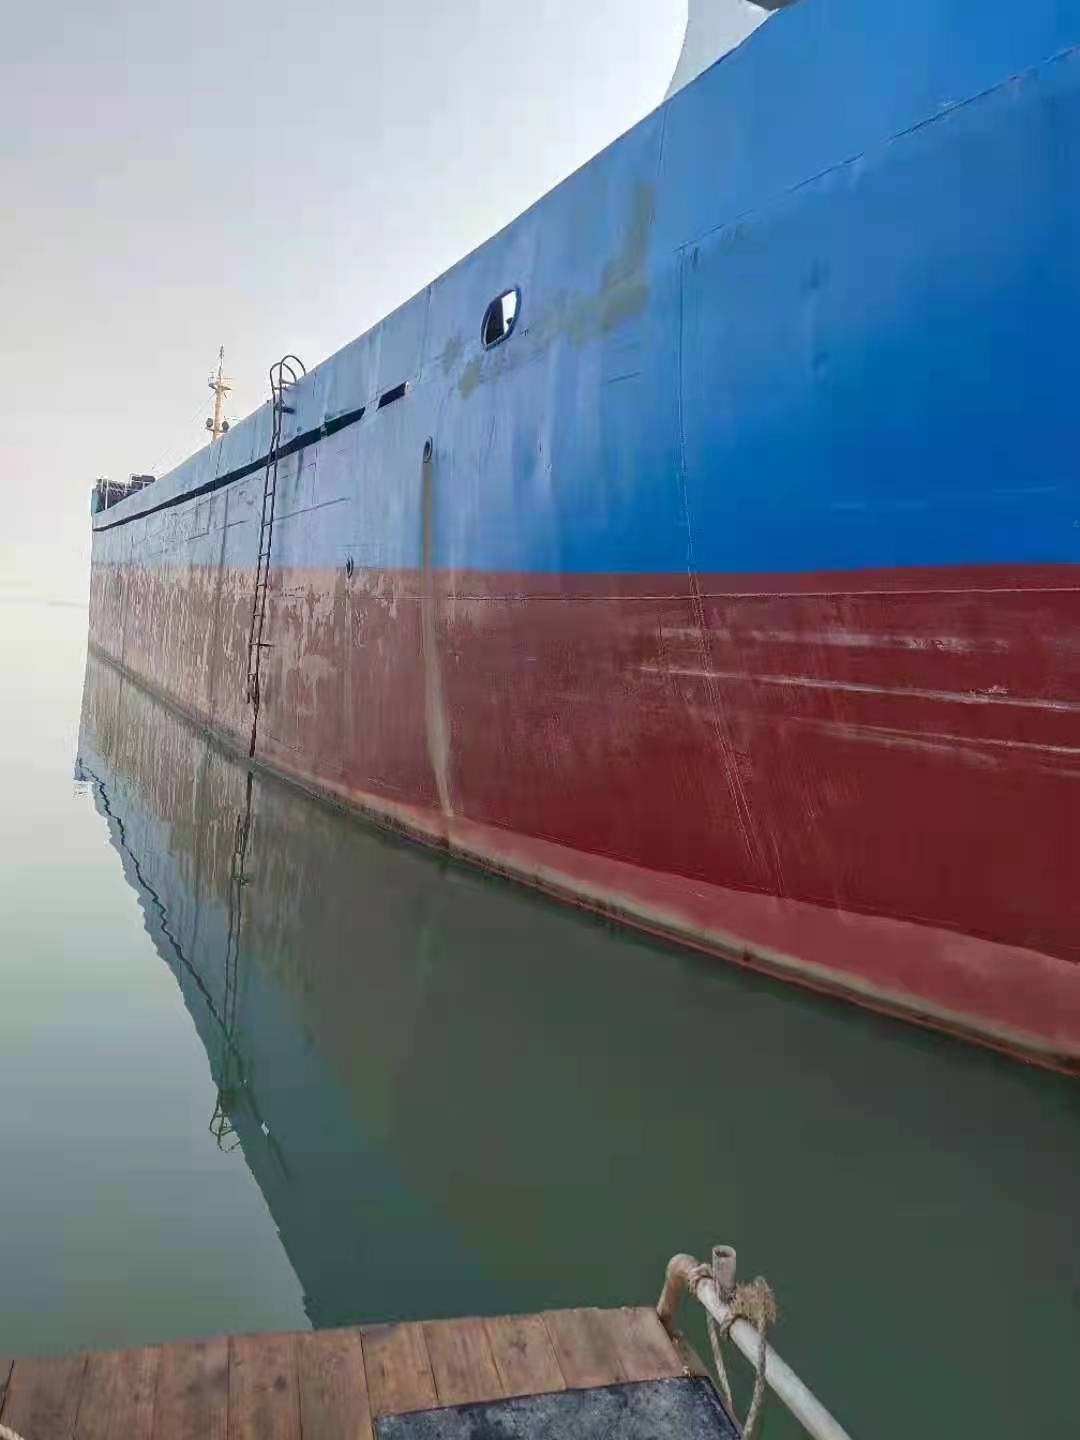 出售编号259 08年3323吨散货船